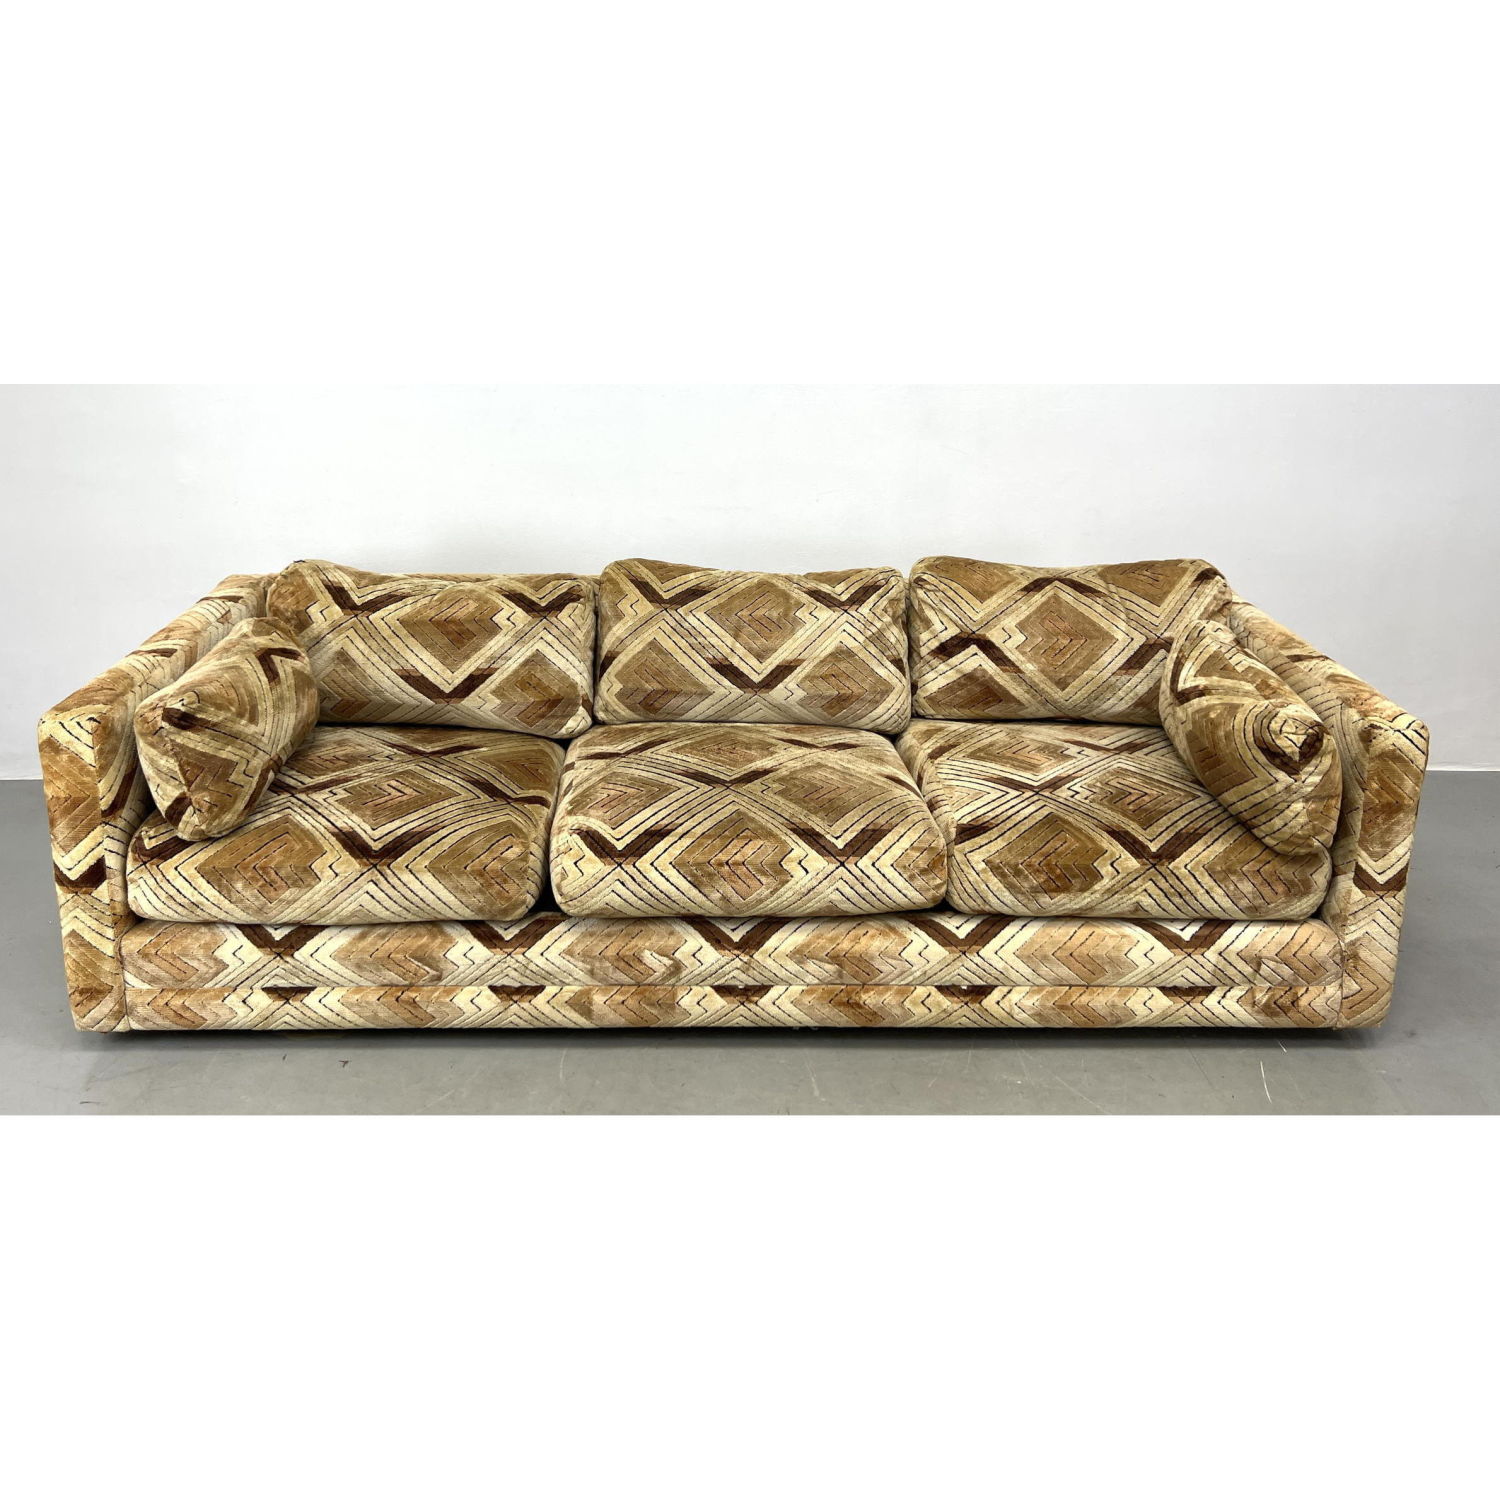 70s Modern Upholstered Sofa. Diamond